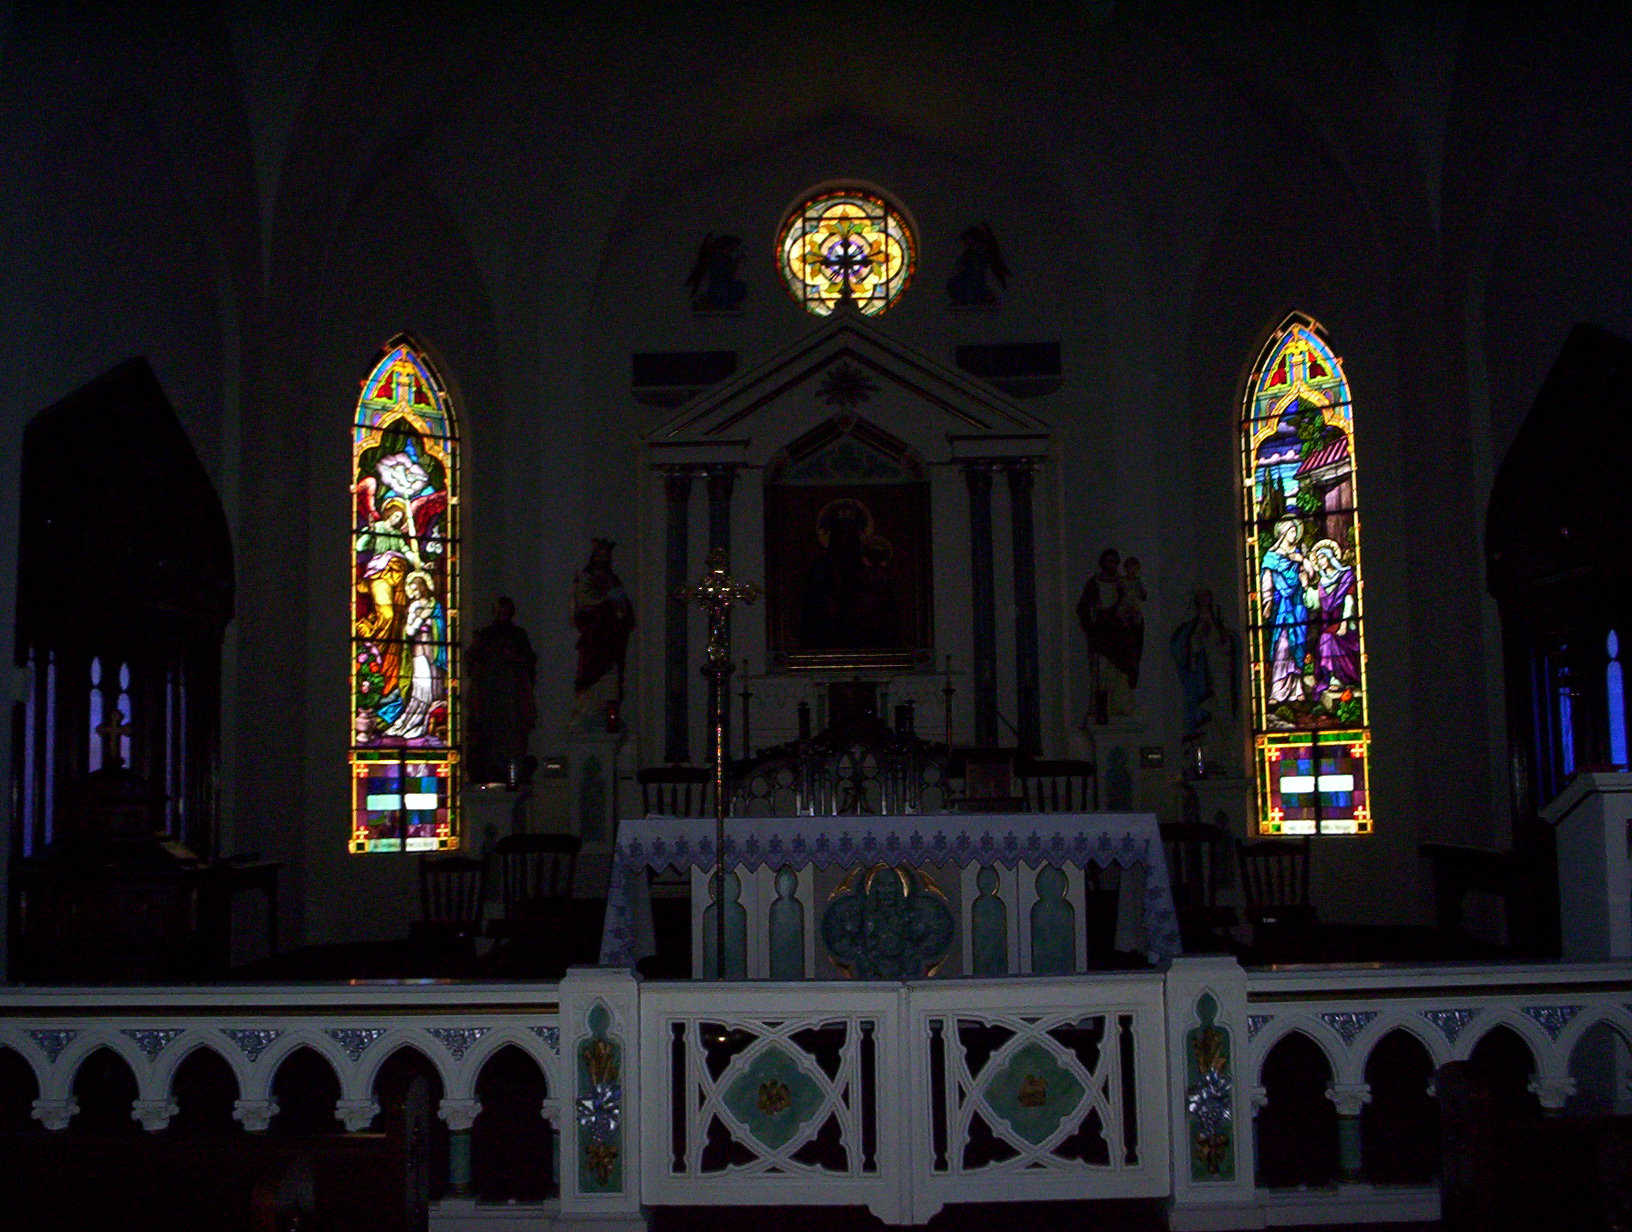 The Church Altar